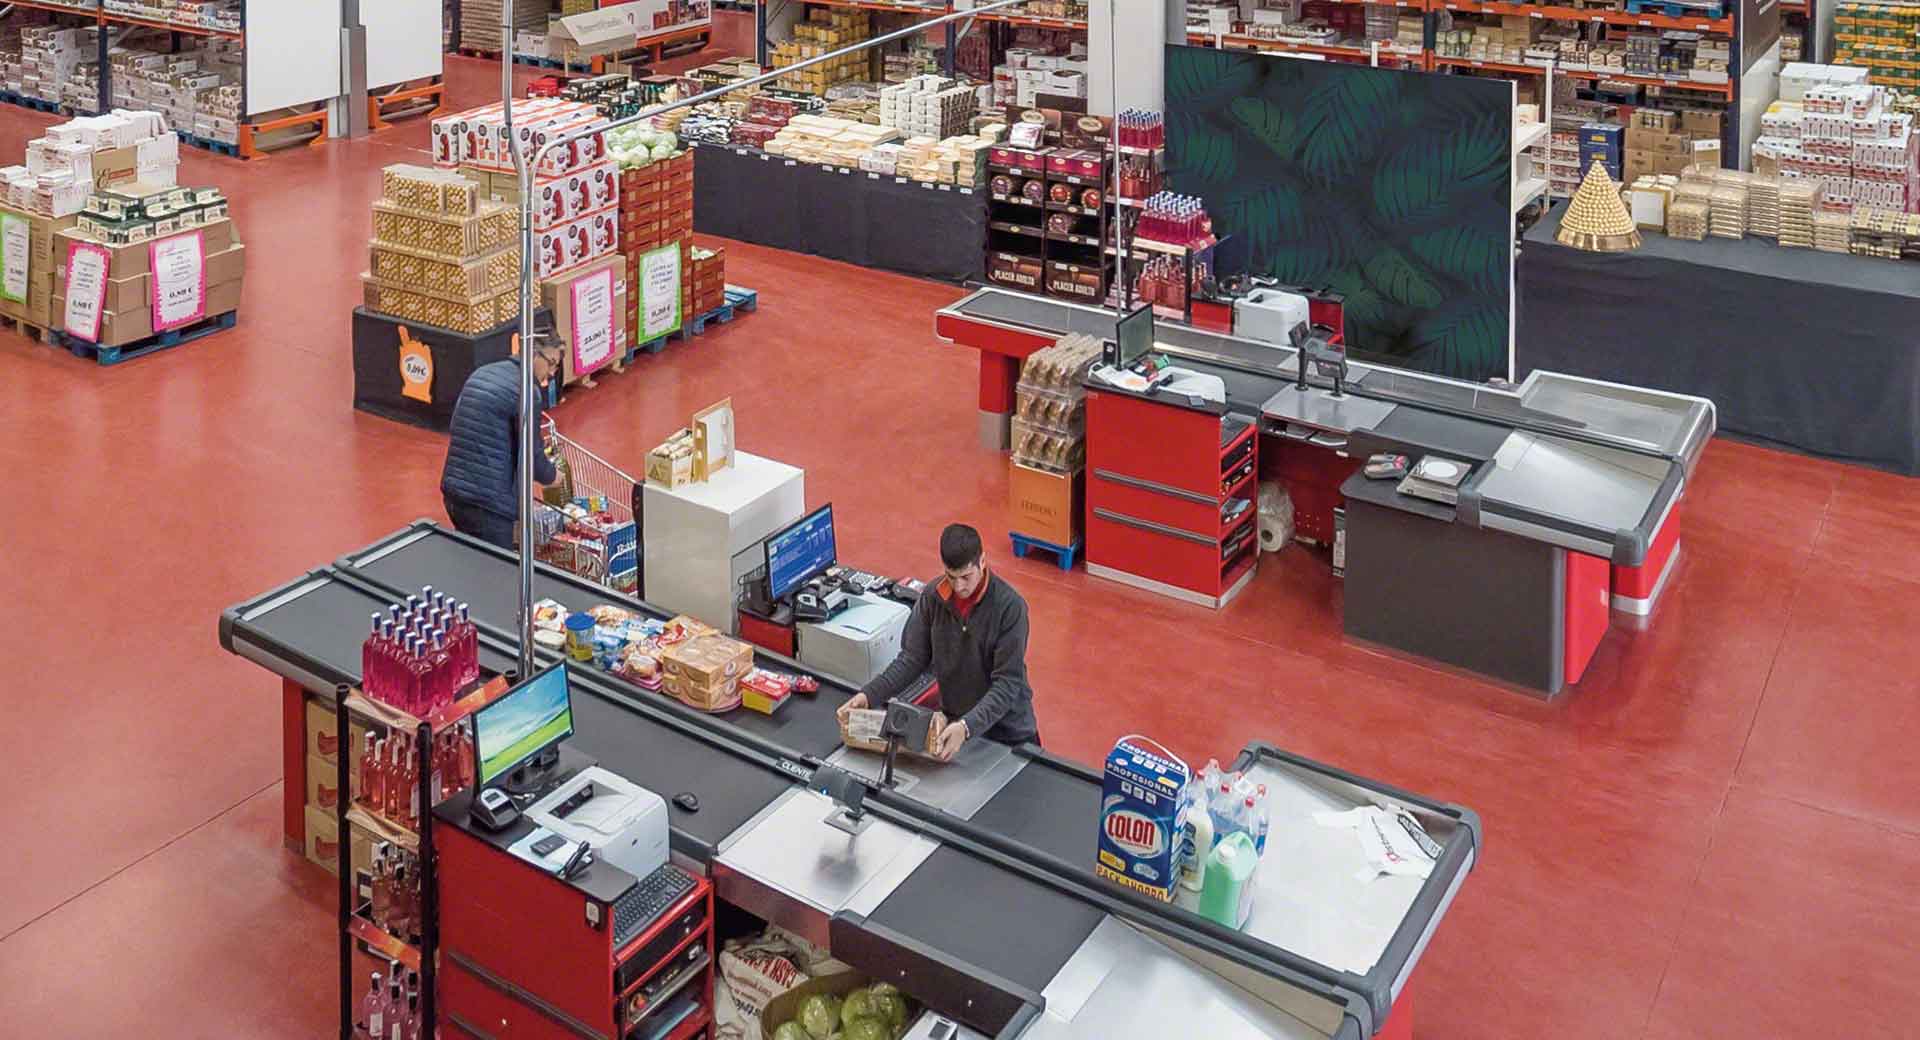 La sincronizzazione dello stock tra magazzino e catene di negozi permette l’integrazione logistica